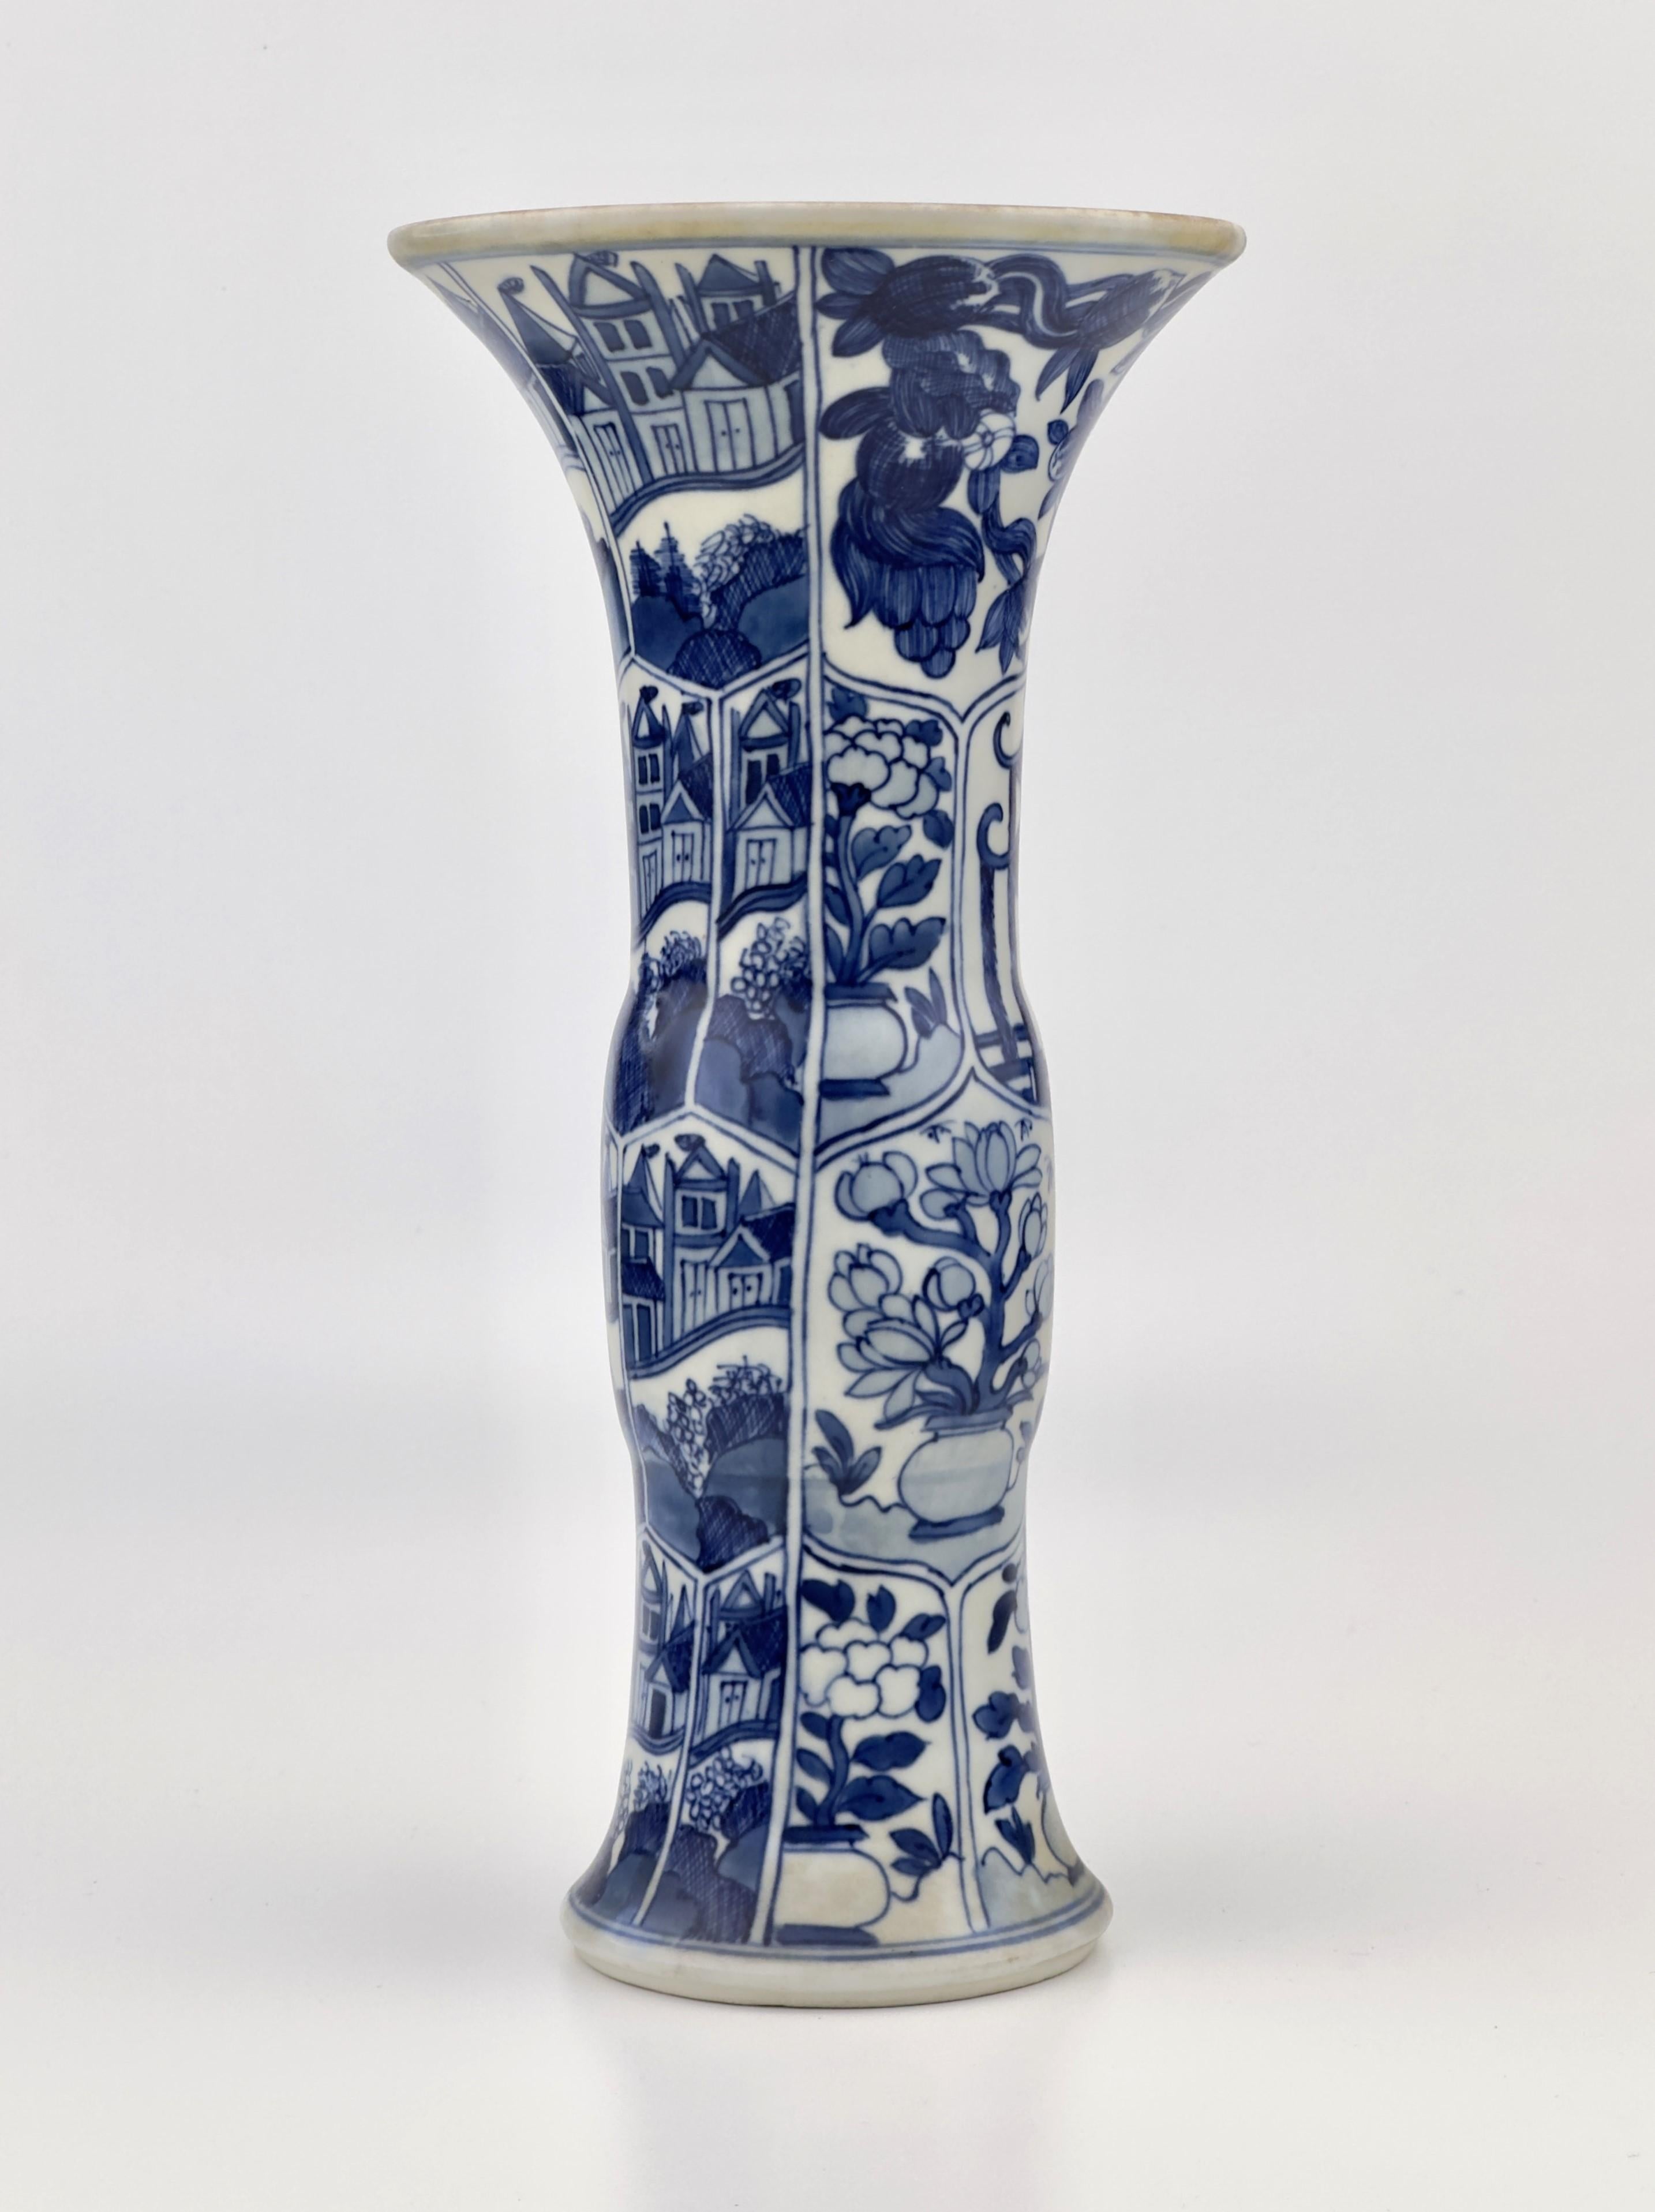 Diese Vase ist auf der einen Seite mit holländischen Grachtenhäusern und auf der anderen Seite mit chinesischen Pagoden und Blumen verziert. Östliche und westliche Motive kamen in der Keramik gleichzeitig zum Ausdruck.

Zeitraum : Qing-Dynastie,